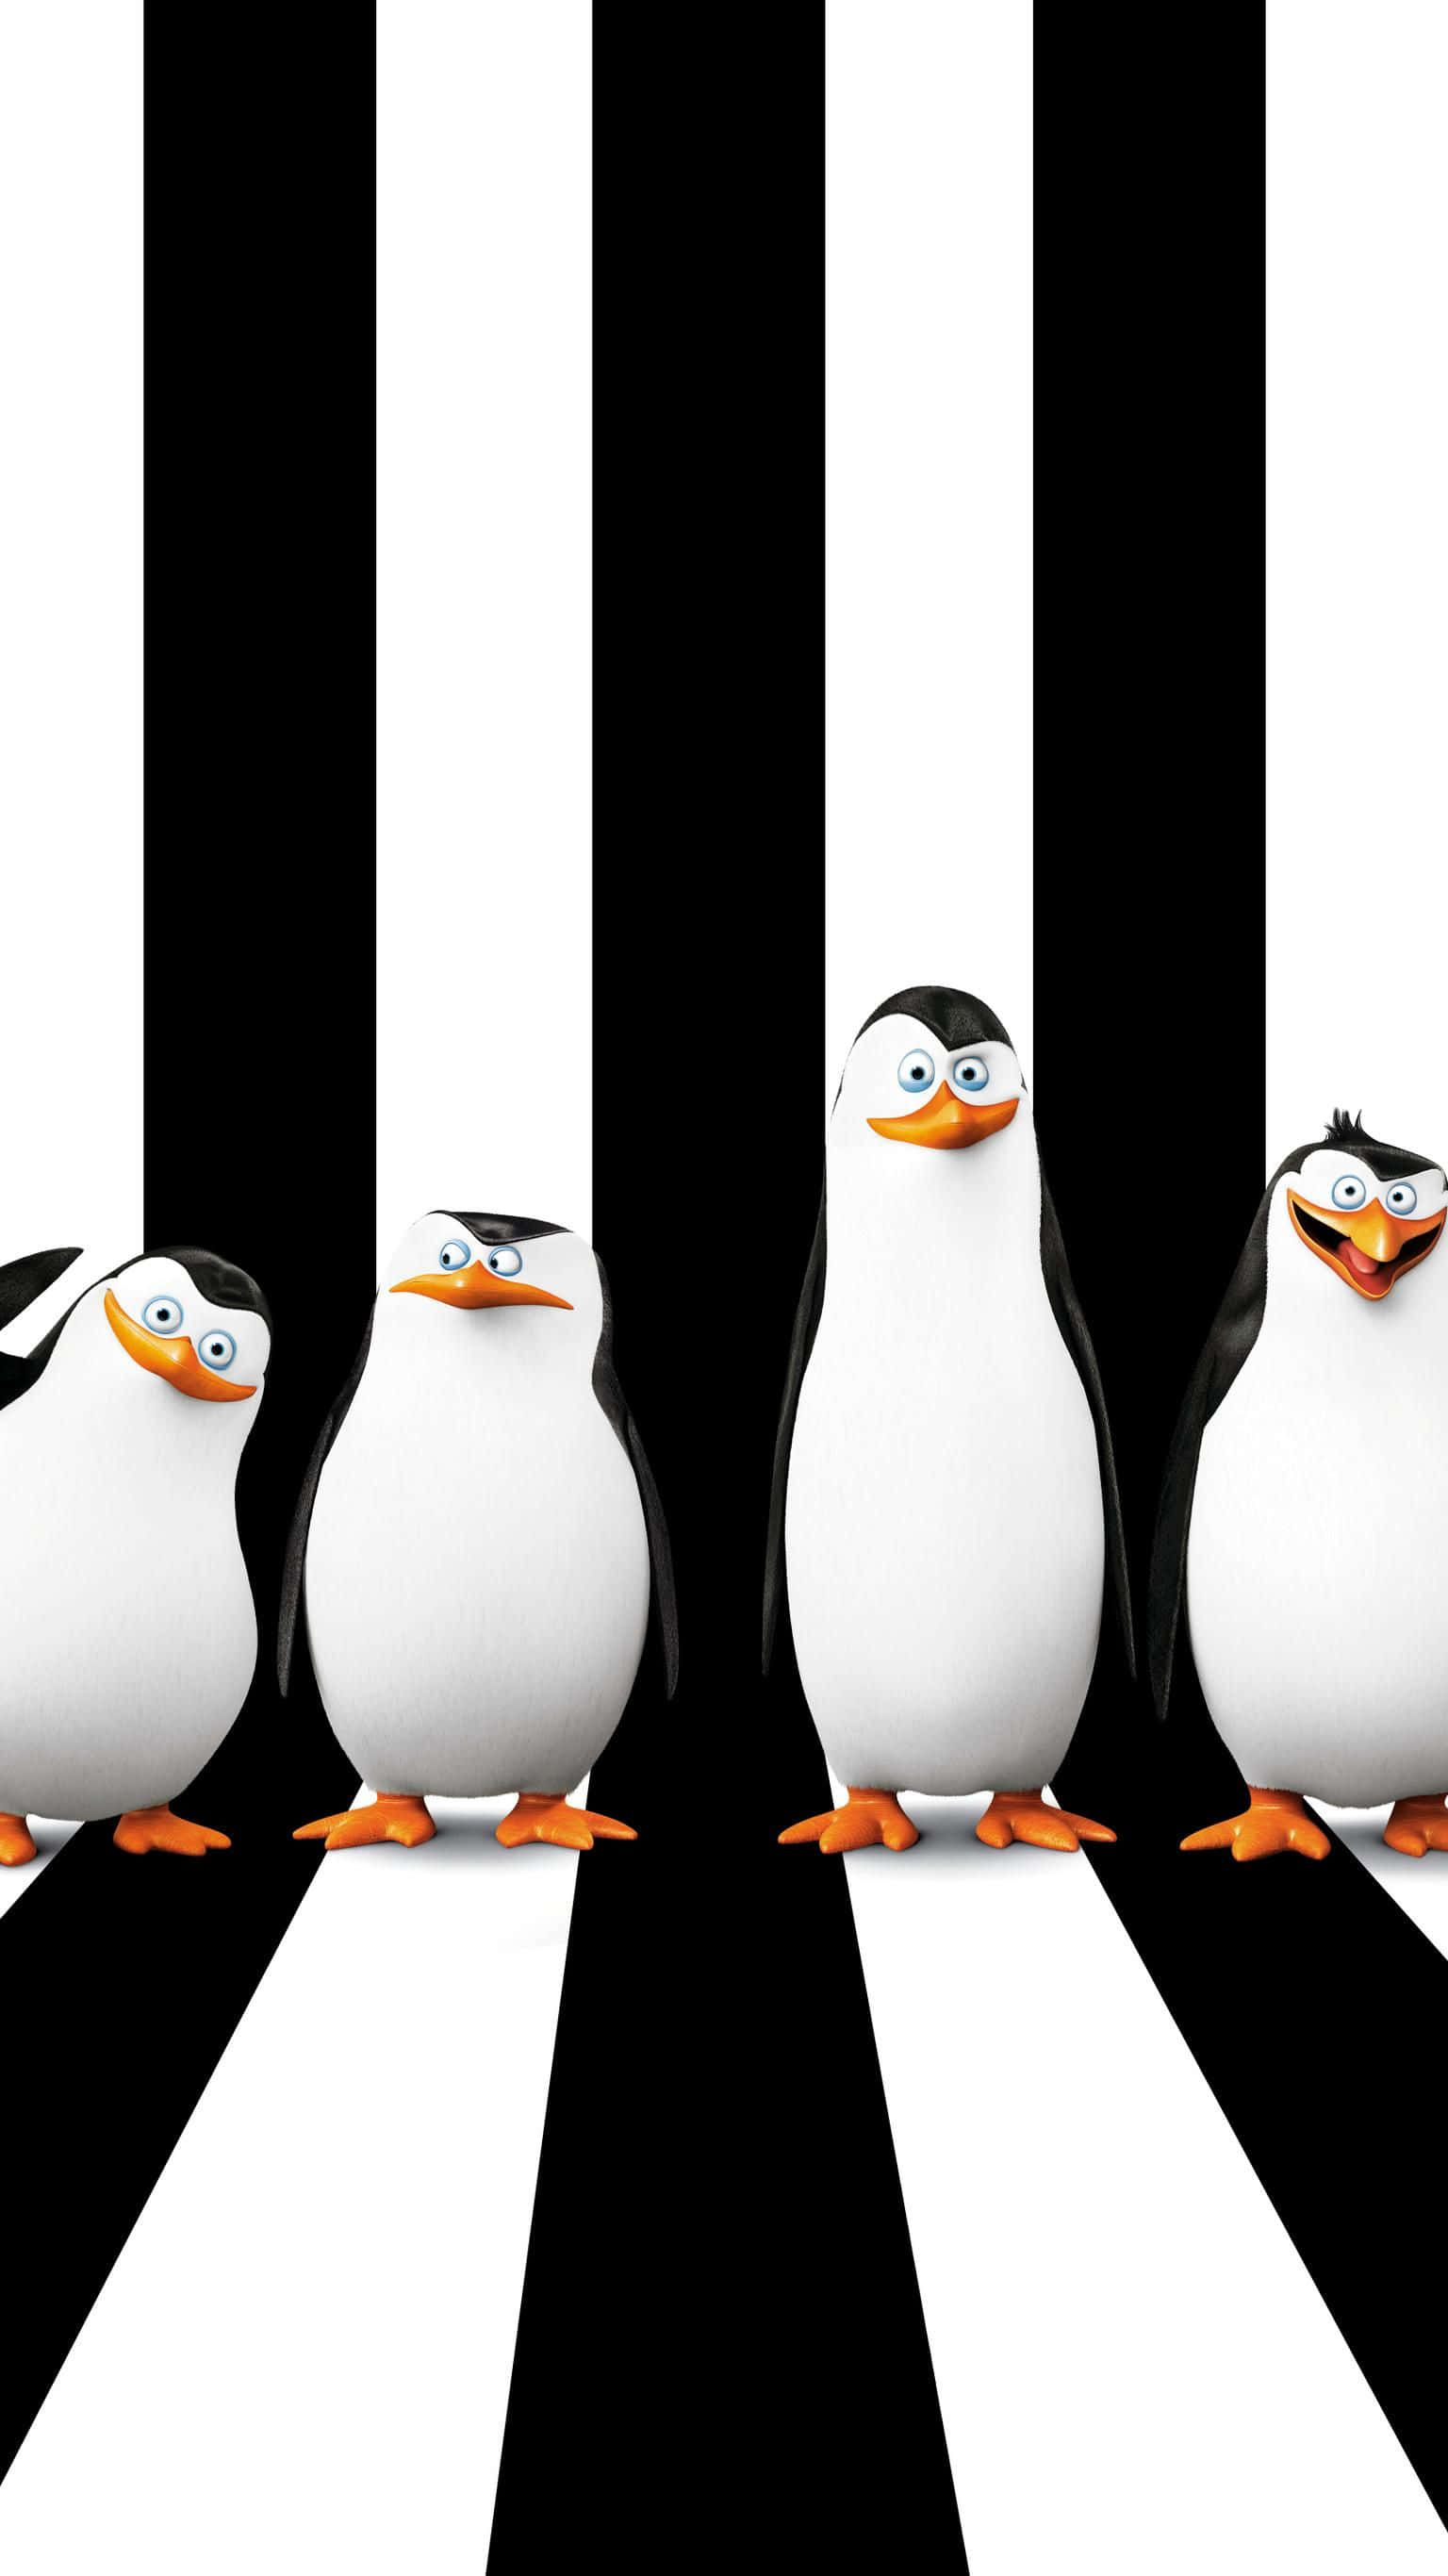 Bienvenidoal País De Las Maravillas Del Invierno - Disfruta De Tu Aventura Invernal Con Un Encantador Pingüino